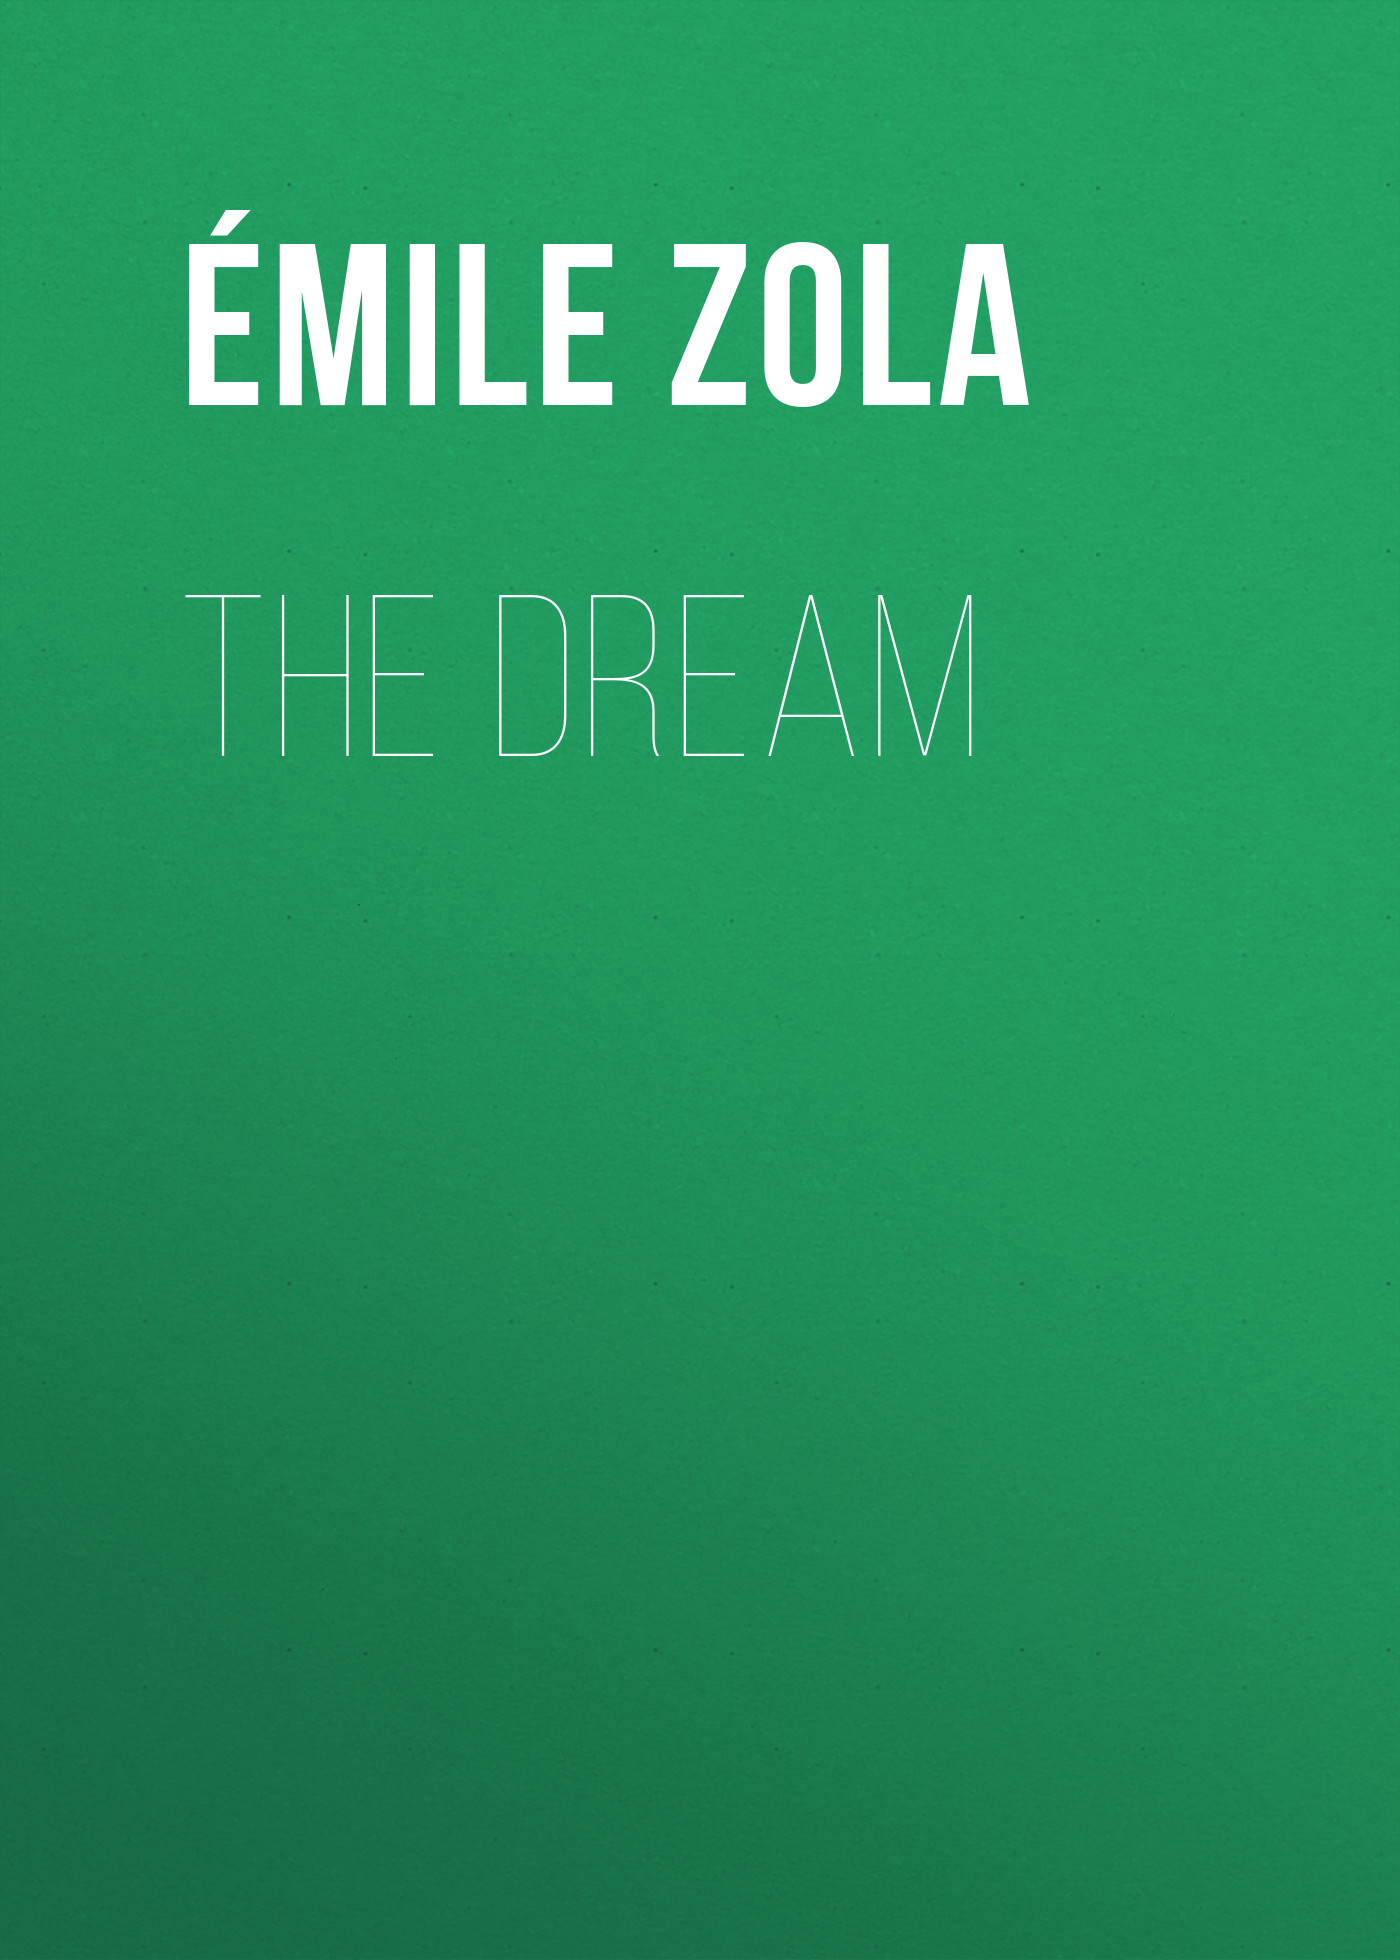 Книга The Dream из серии , созданная Émile Zola, может относится к жанру Литература 19 века, Зарубежная старинная литература, Зарубежная классика. Стоимость электронной книги The Dream с идентификатором 25560516 составляет 0 руб.